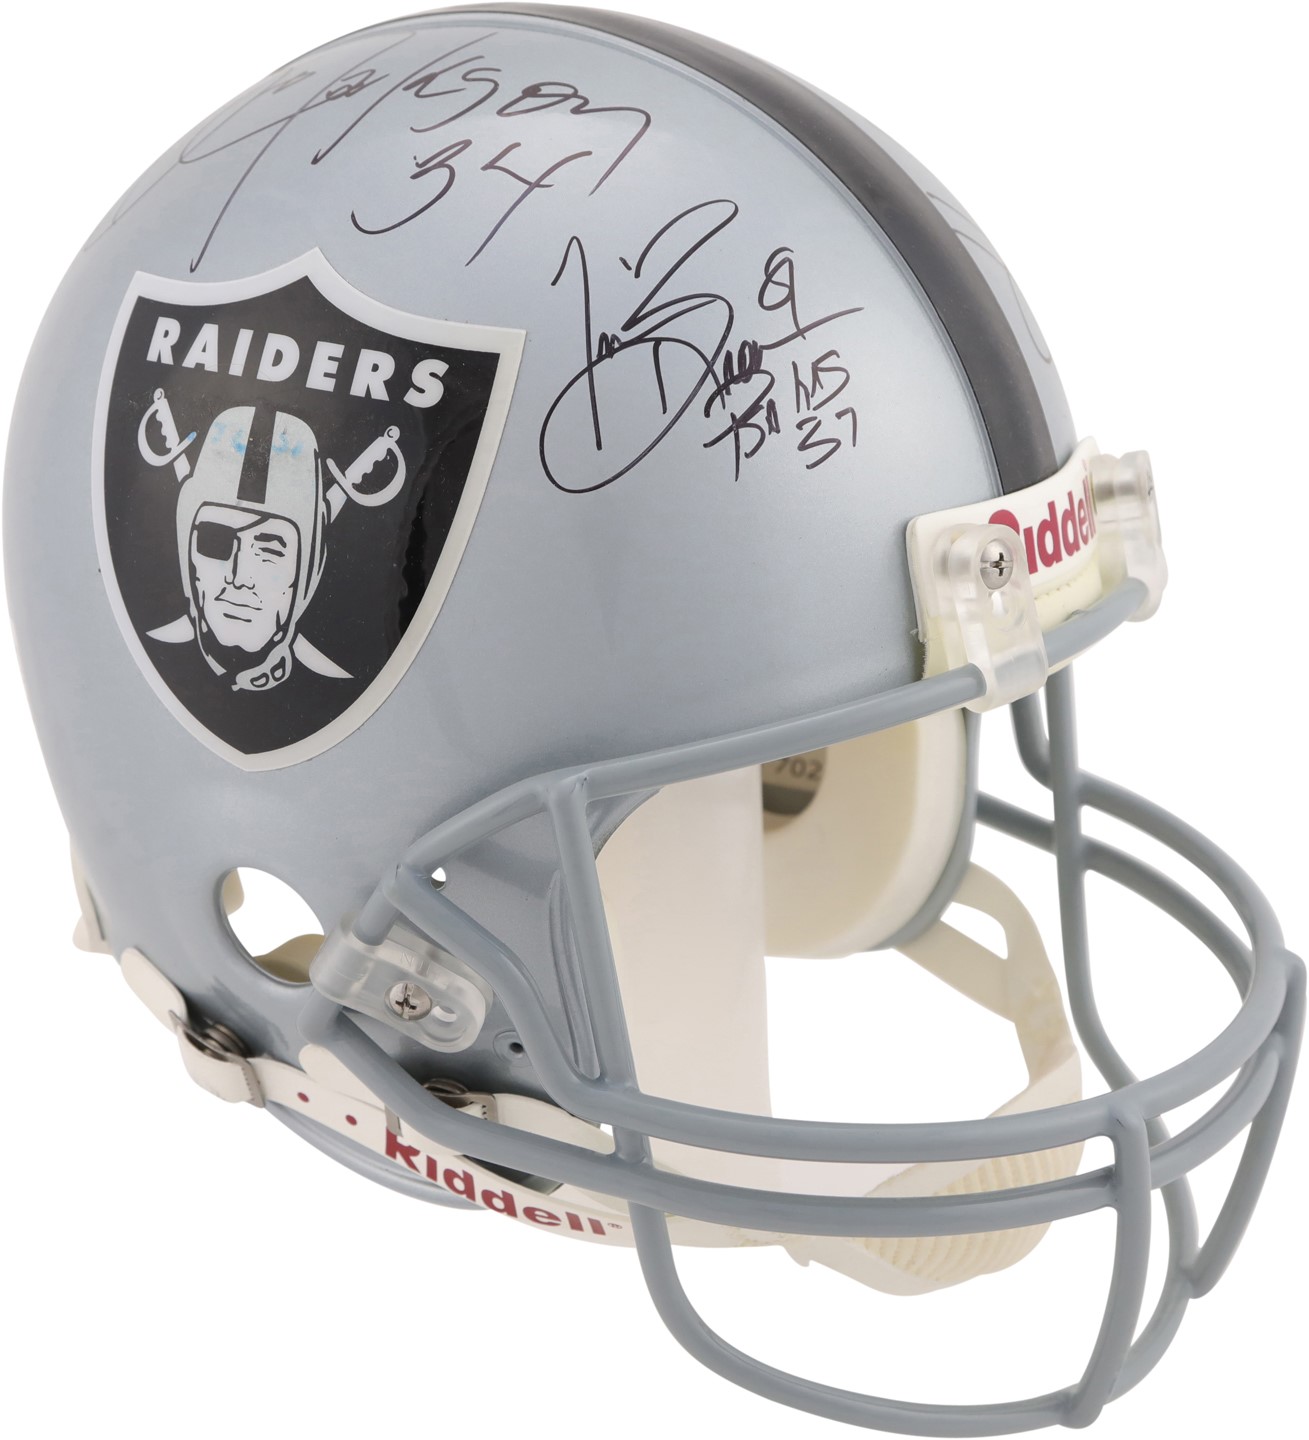 - Raiders Legends Signed Helmet